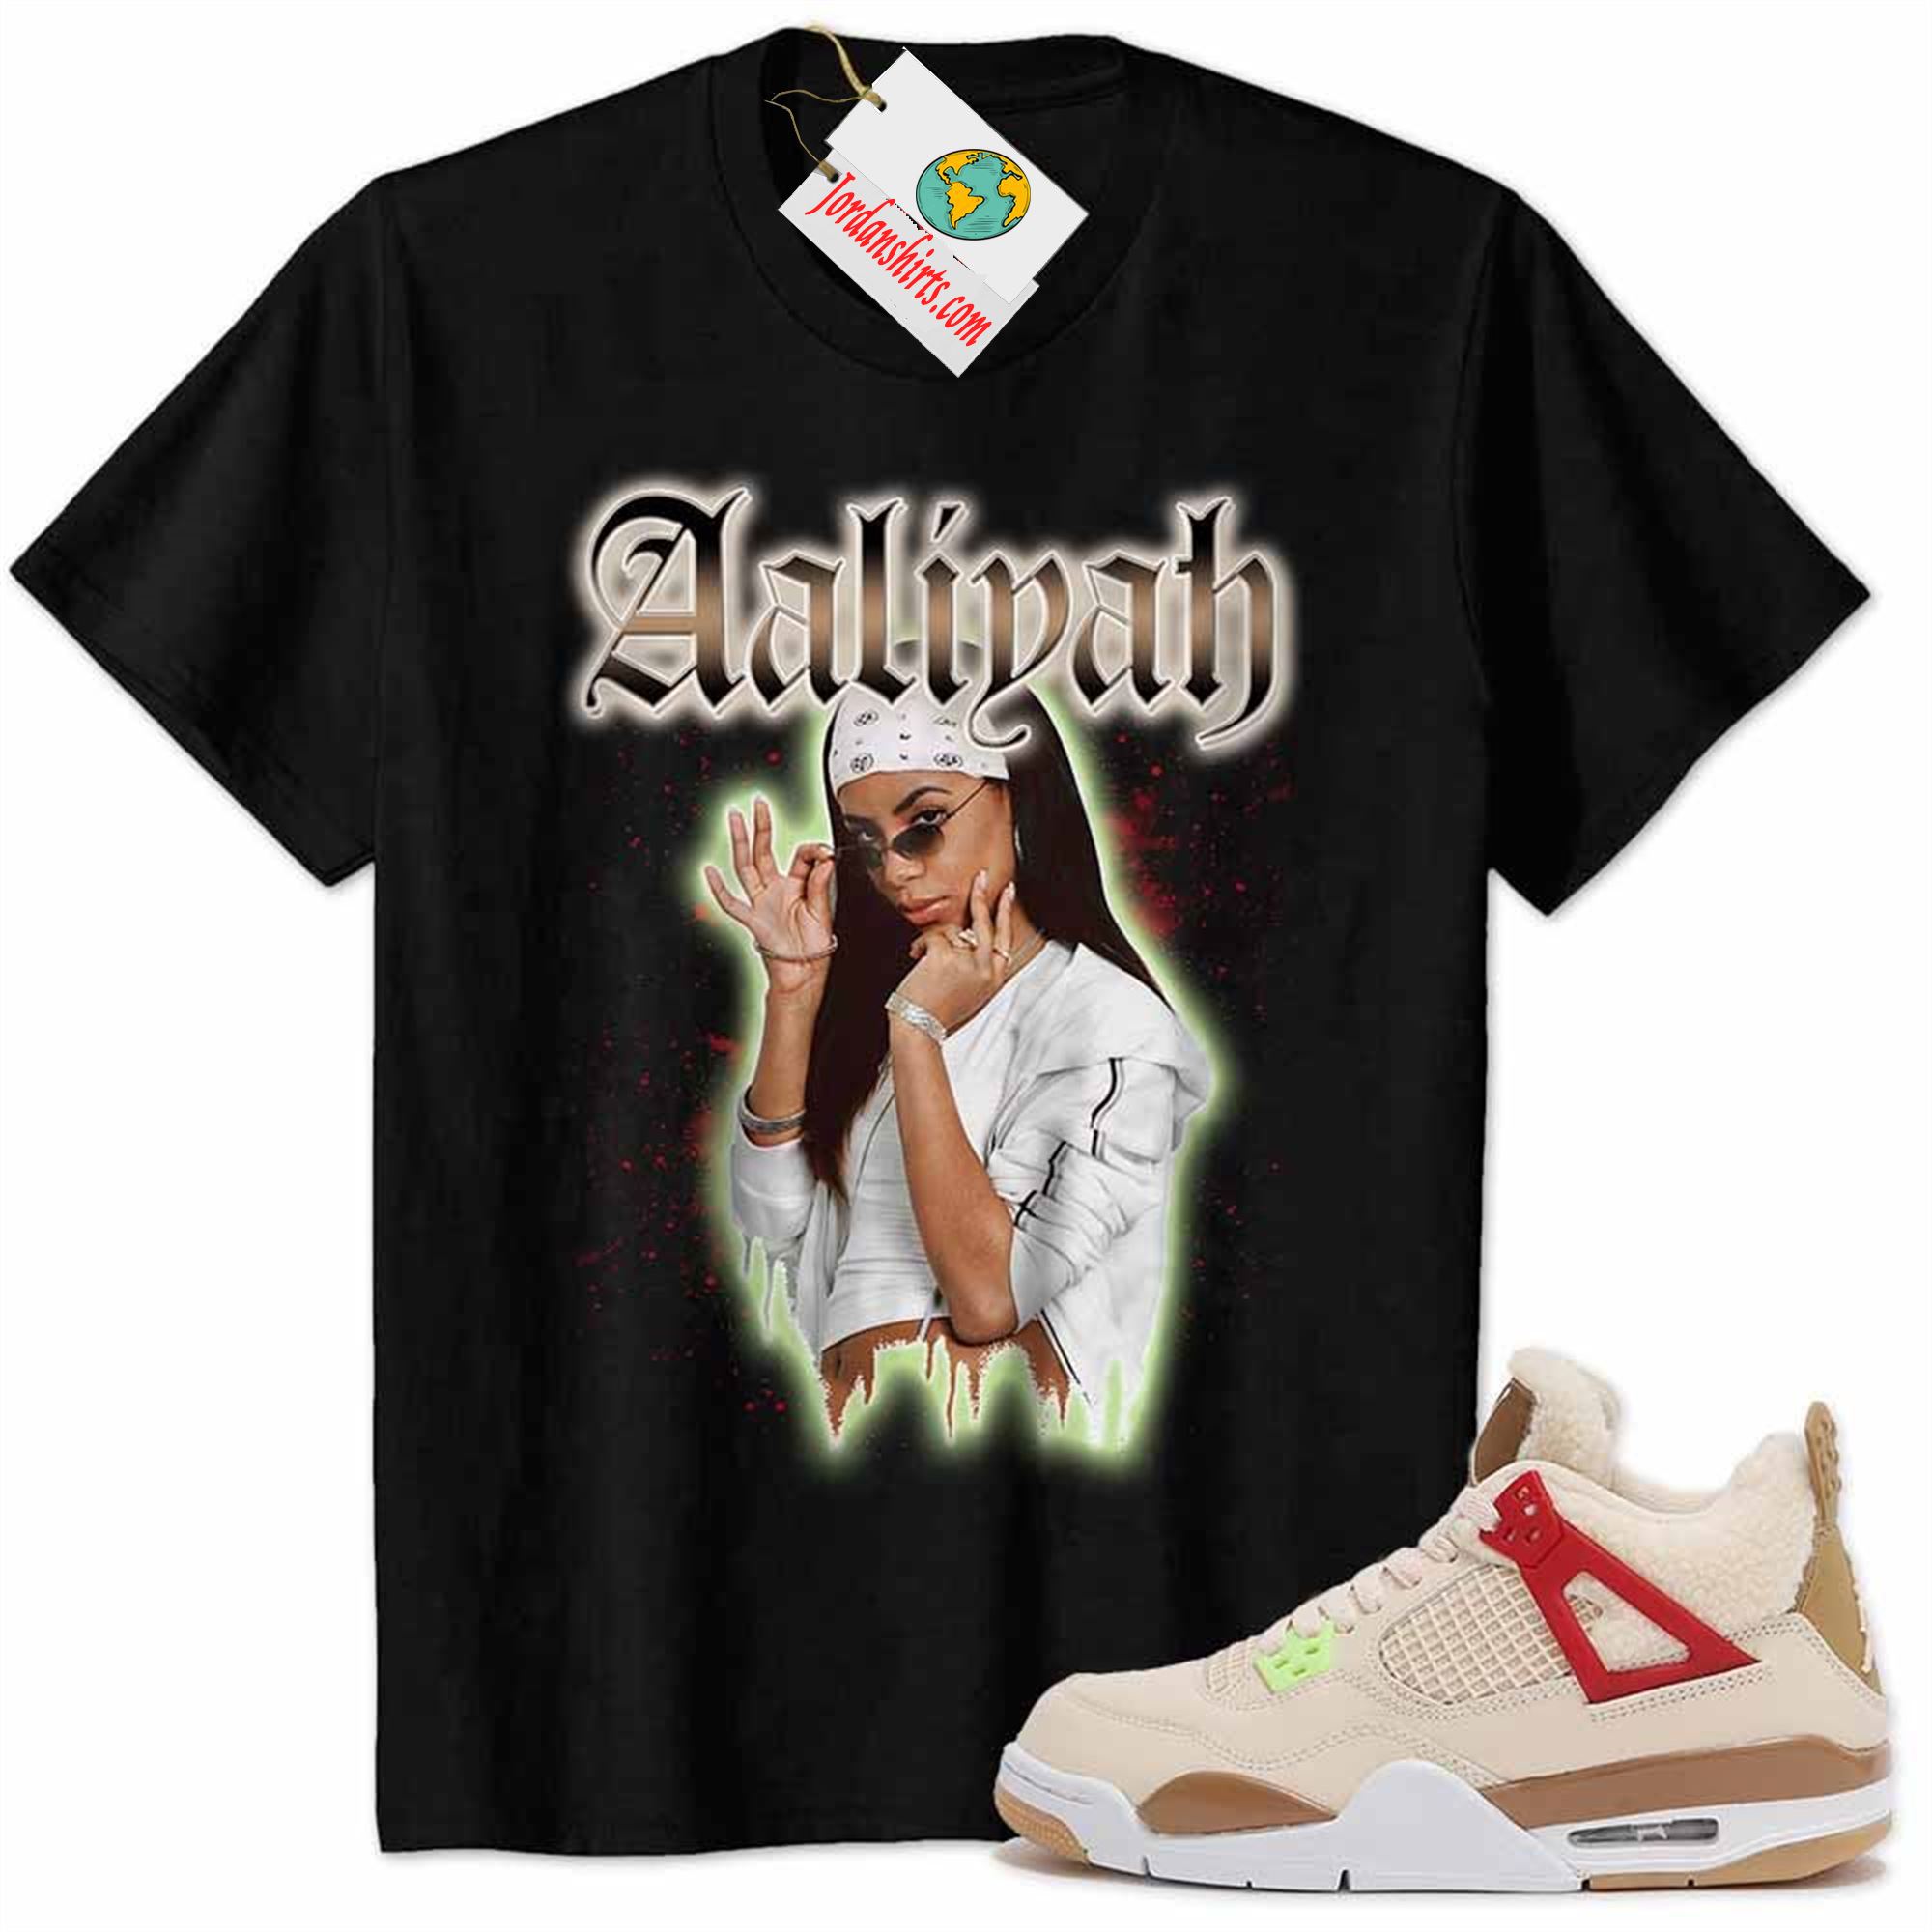 Jordan 4 Shirt, Aaliyah Graphic Black Air Jordan 4 Wild Things 4s Full Size Up To 5xl